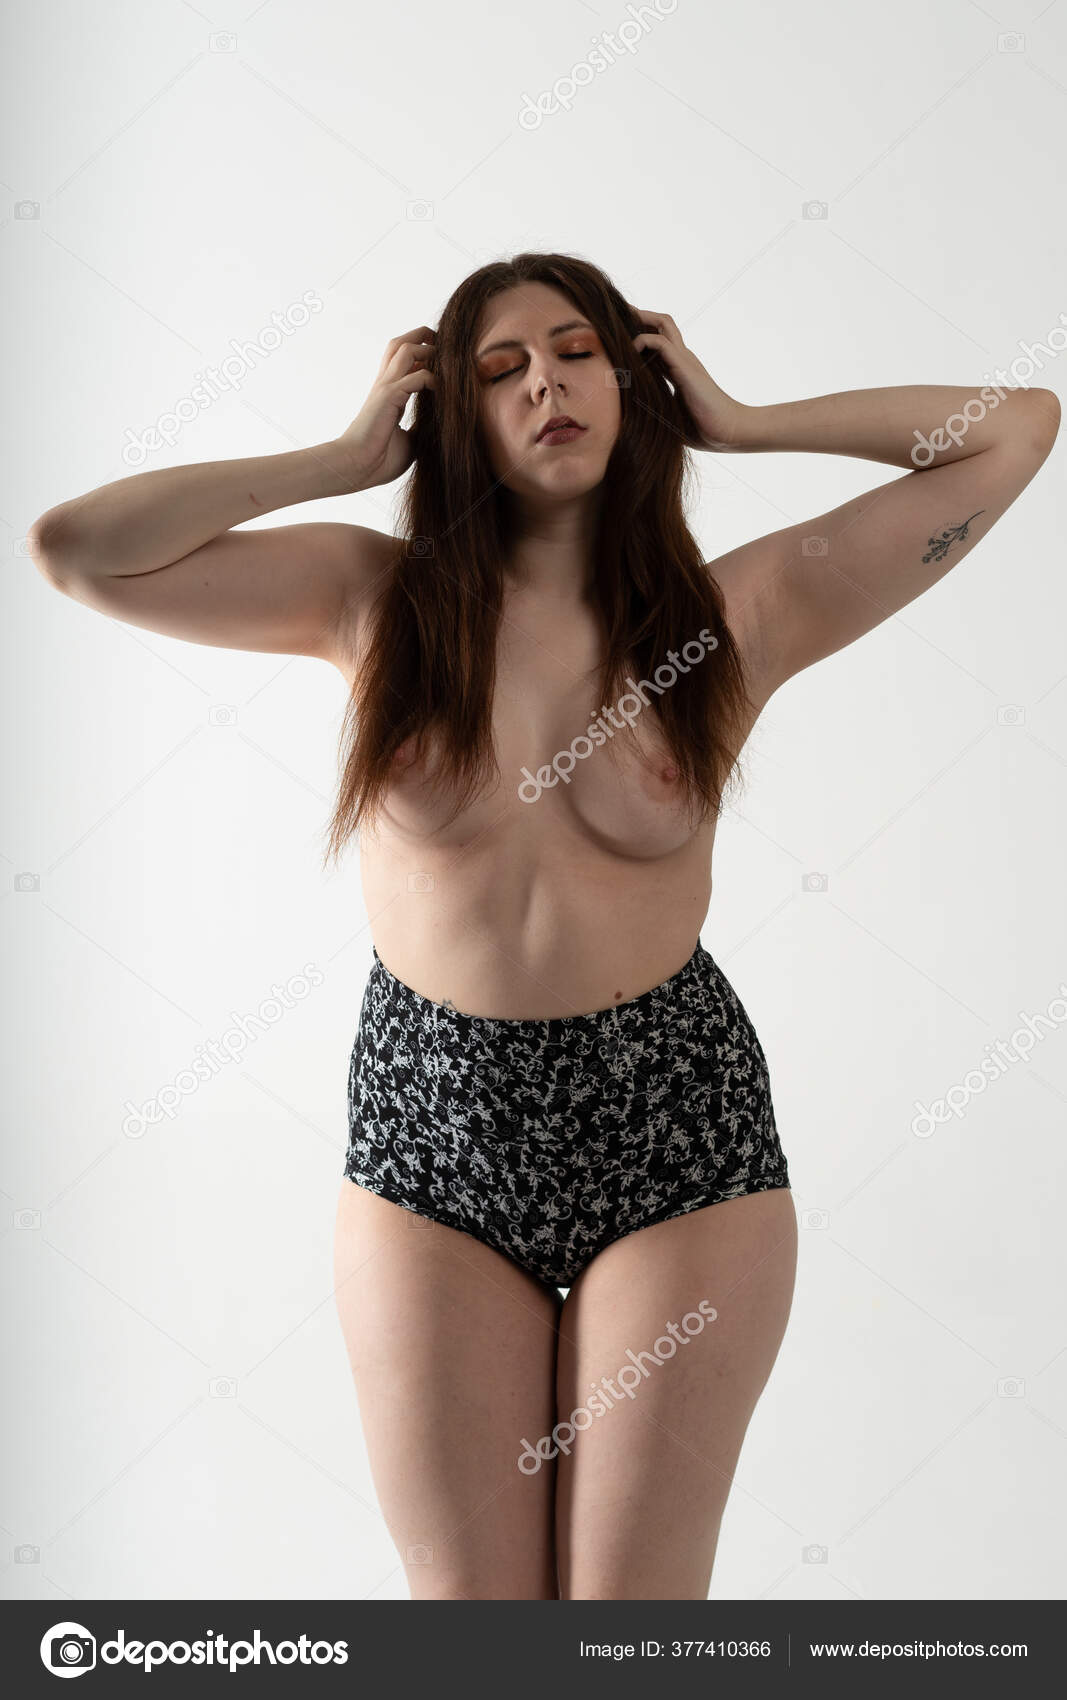 https://st3n.depositphotos.com/10086424/37741/i/1600/depositphotos_377410366-stock-photo-young-beautiful-girl-posing-nude.jpg